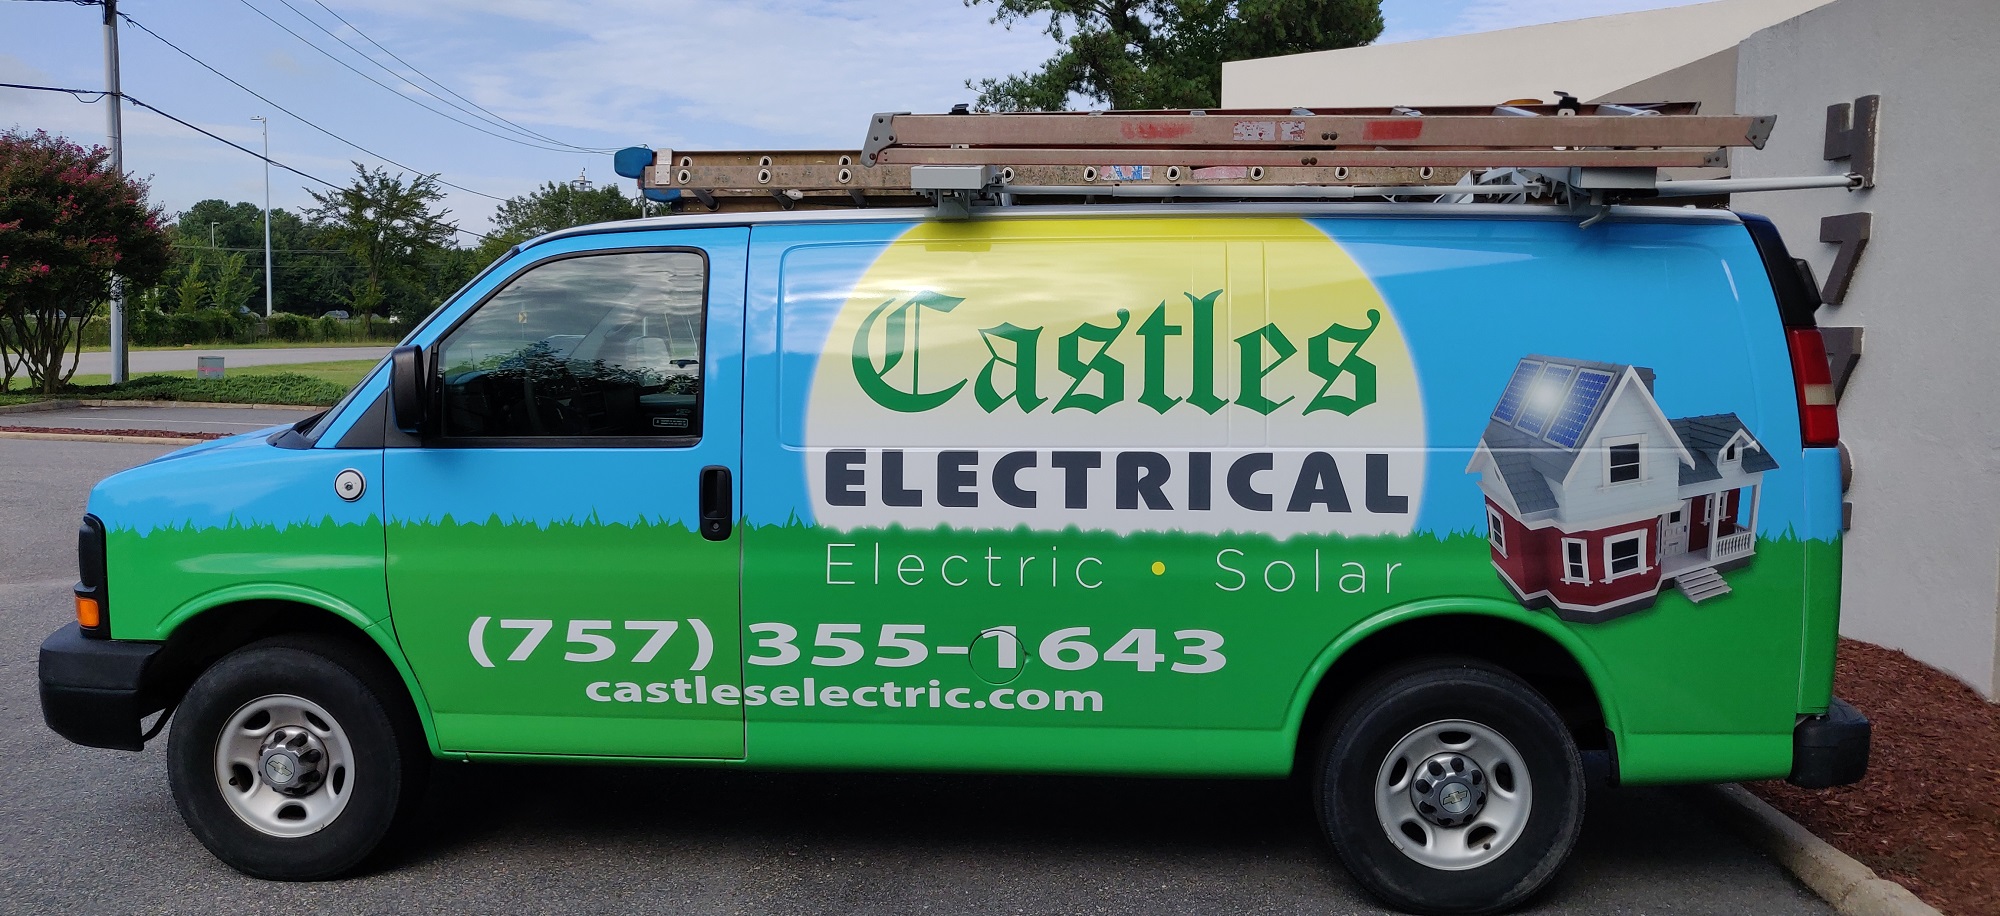 Castles Electrical van